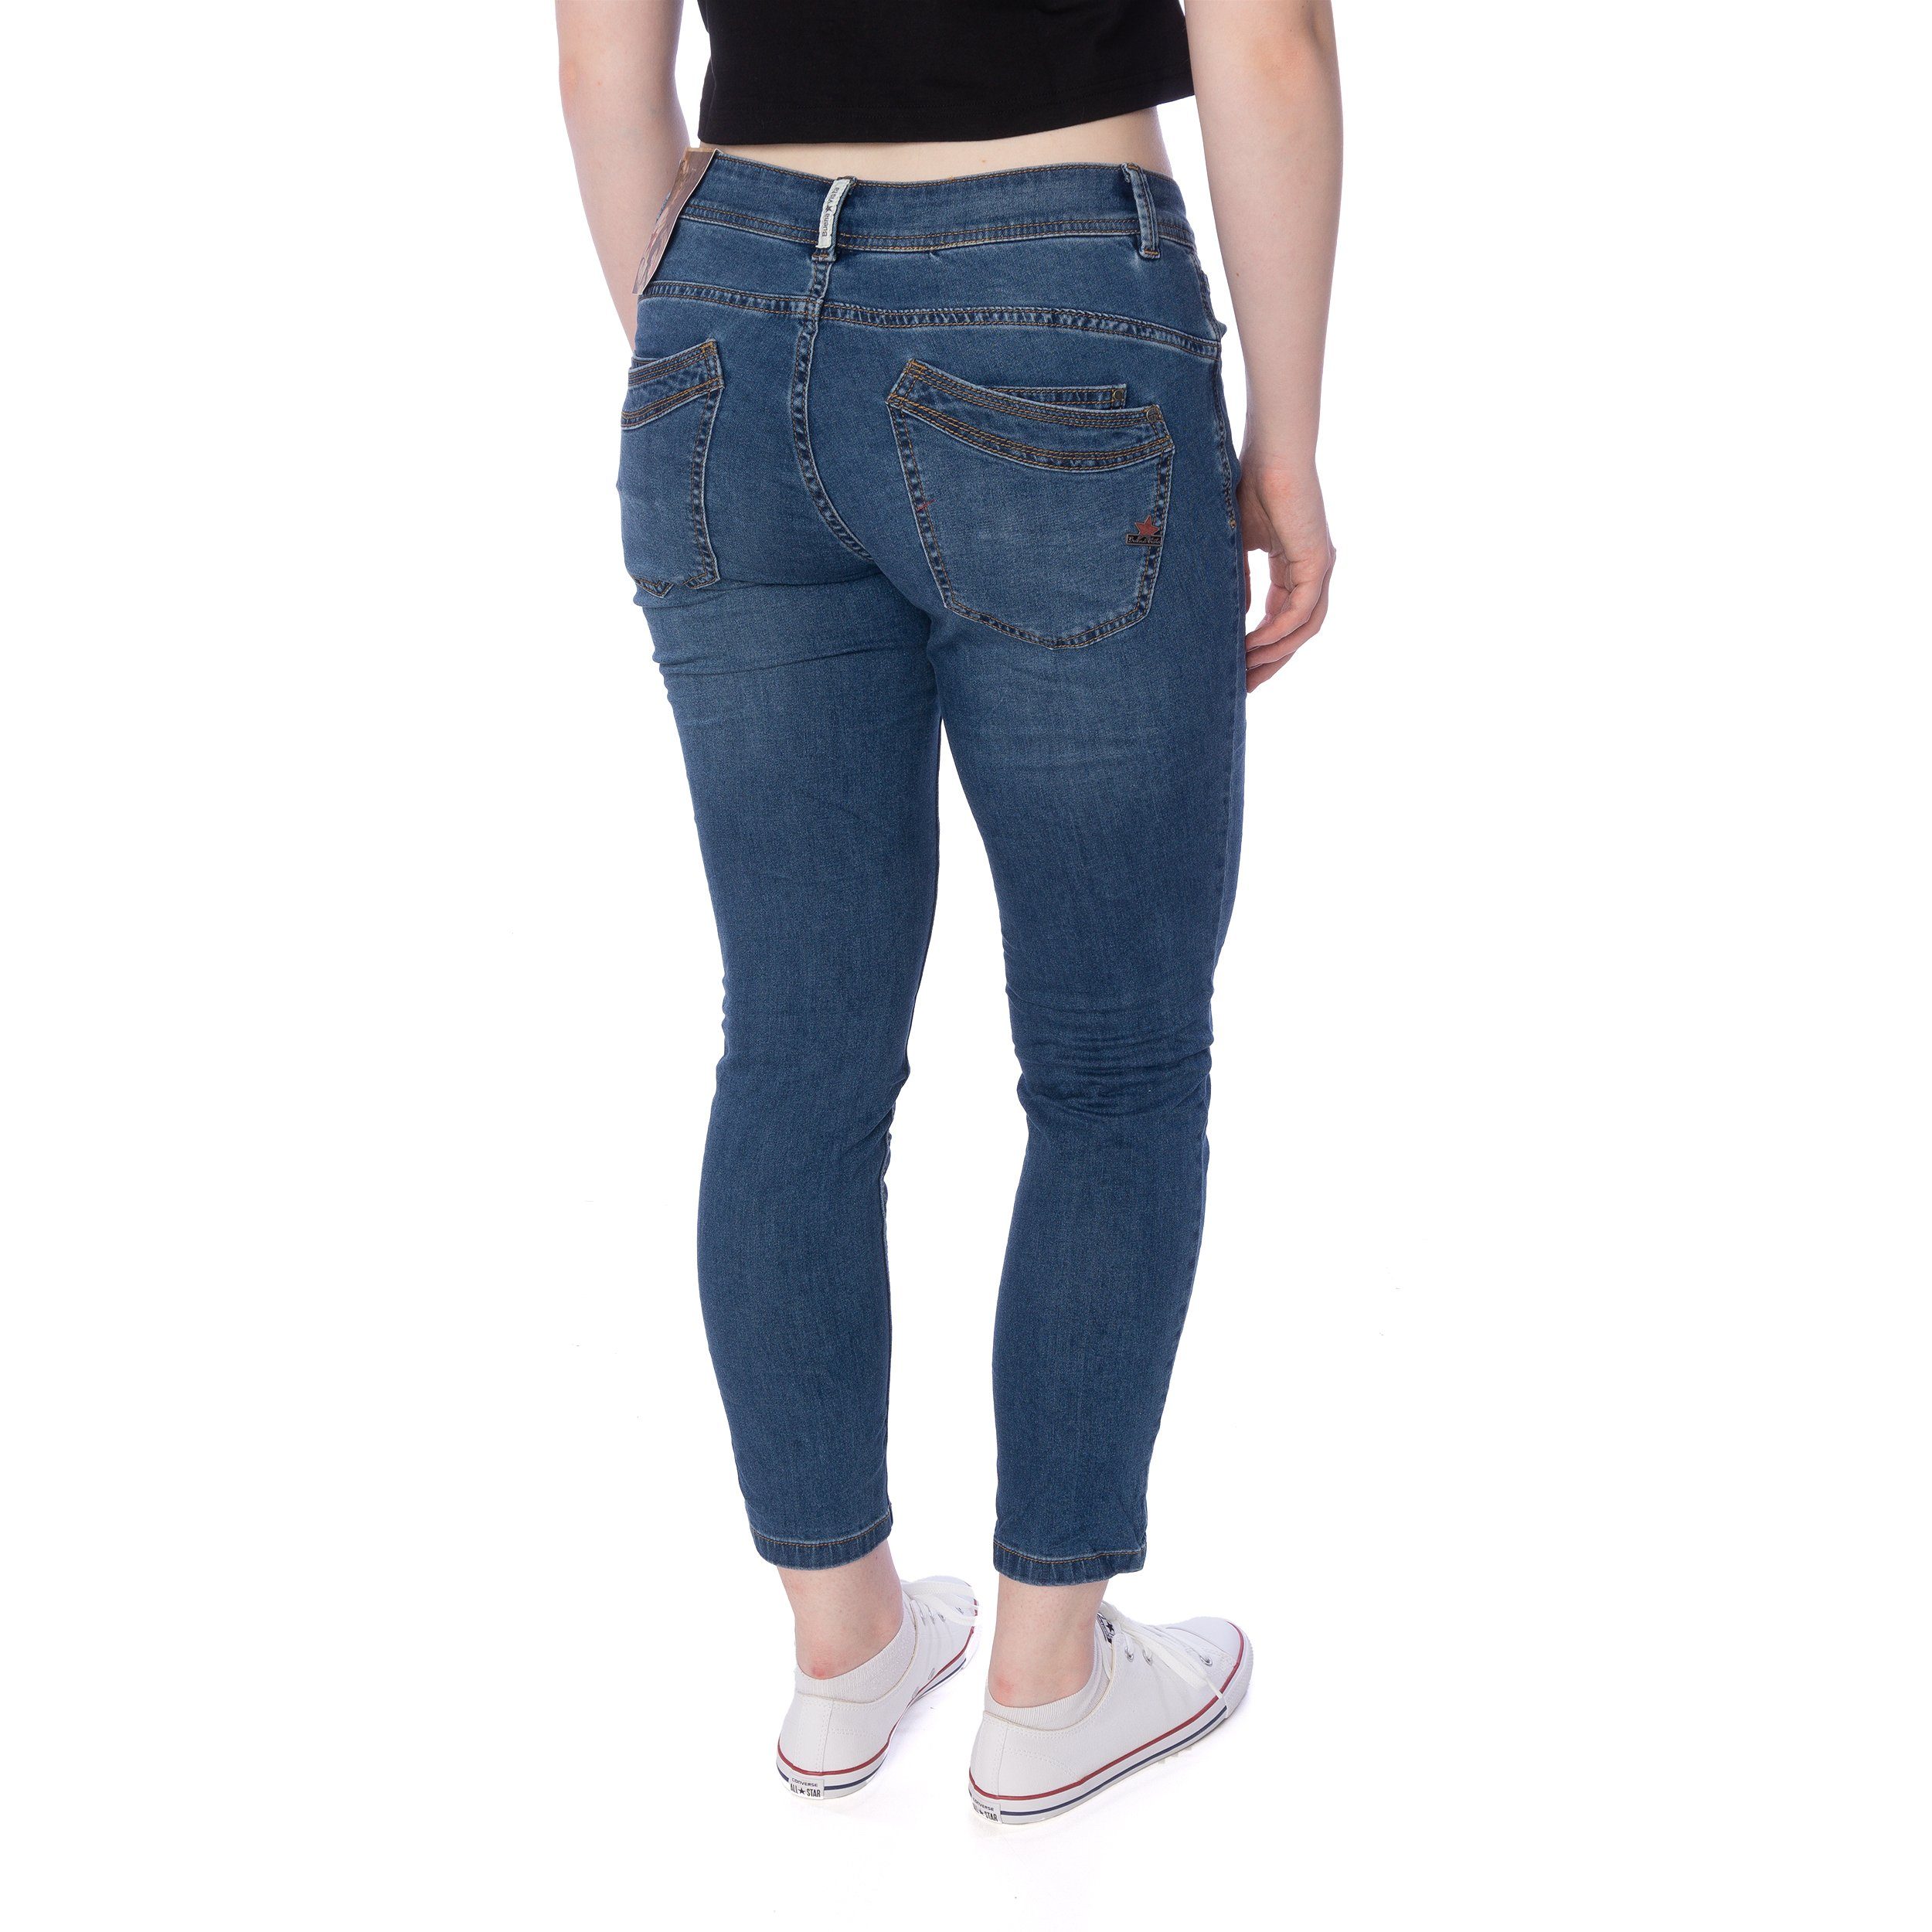 Jeans Vista Slim-fit-Jeans blau stretch Vista Hose Buena Malibu Damen 7/8 Buena denim